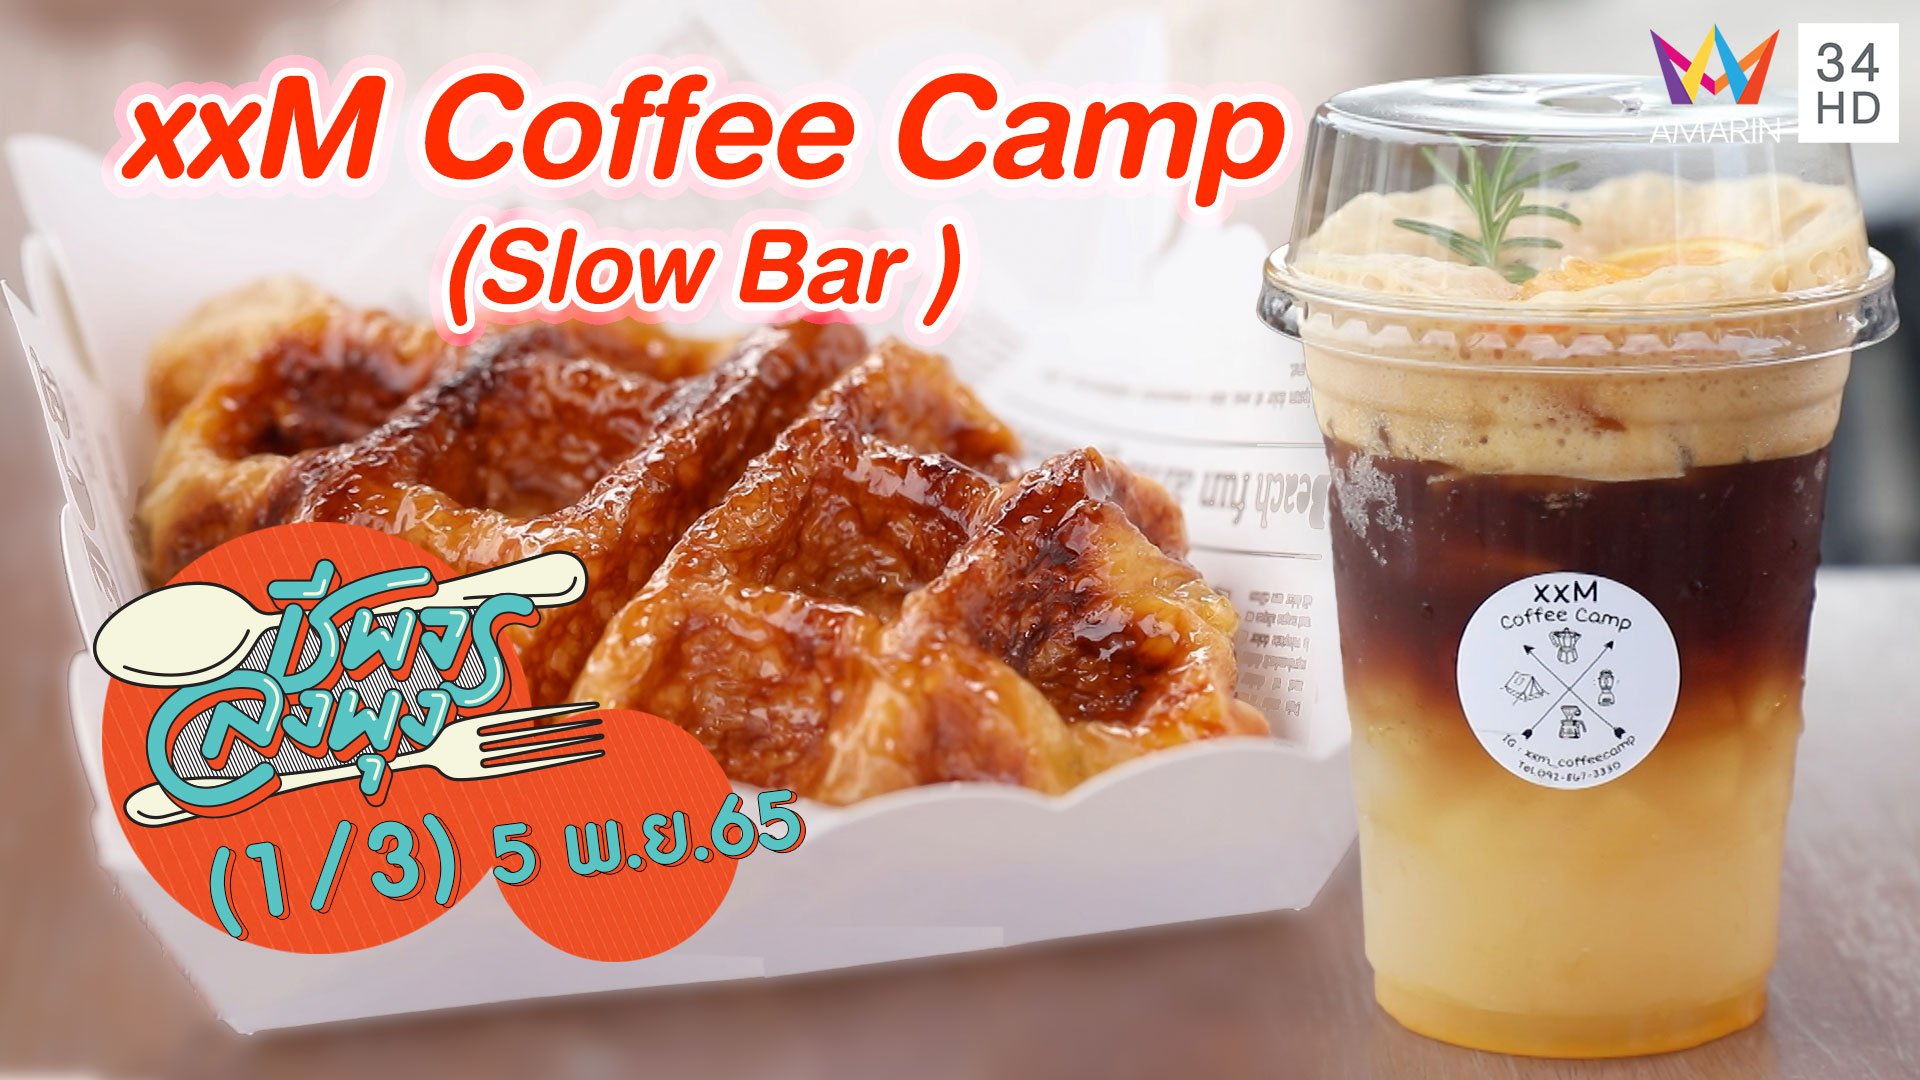 ร้านกาแฟ Slow Bar สไตล์แคมป์ปิ้ง @ xxM Coffee Camp | ชีพจรลงพุง | 5 พ.ย. 65 (1/3) | AMARIN TVHD34